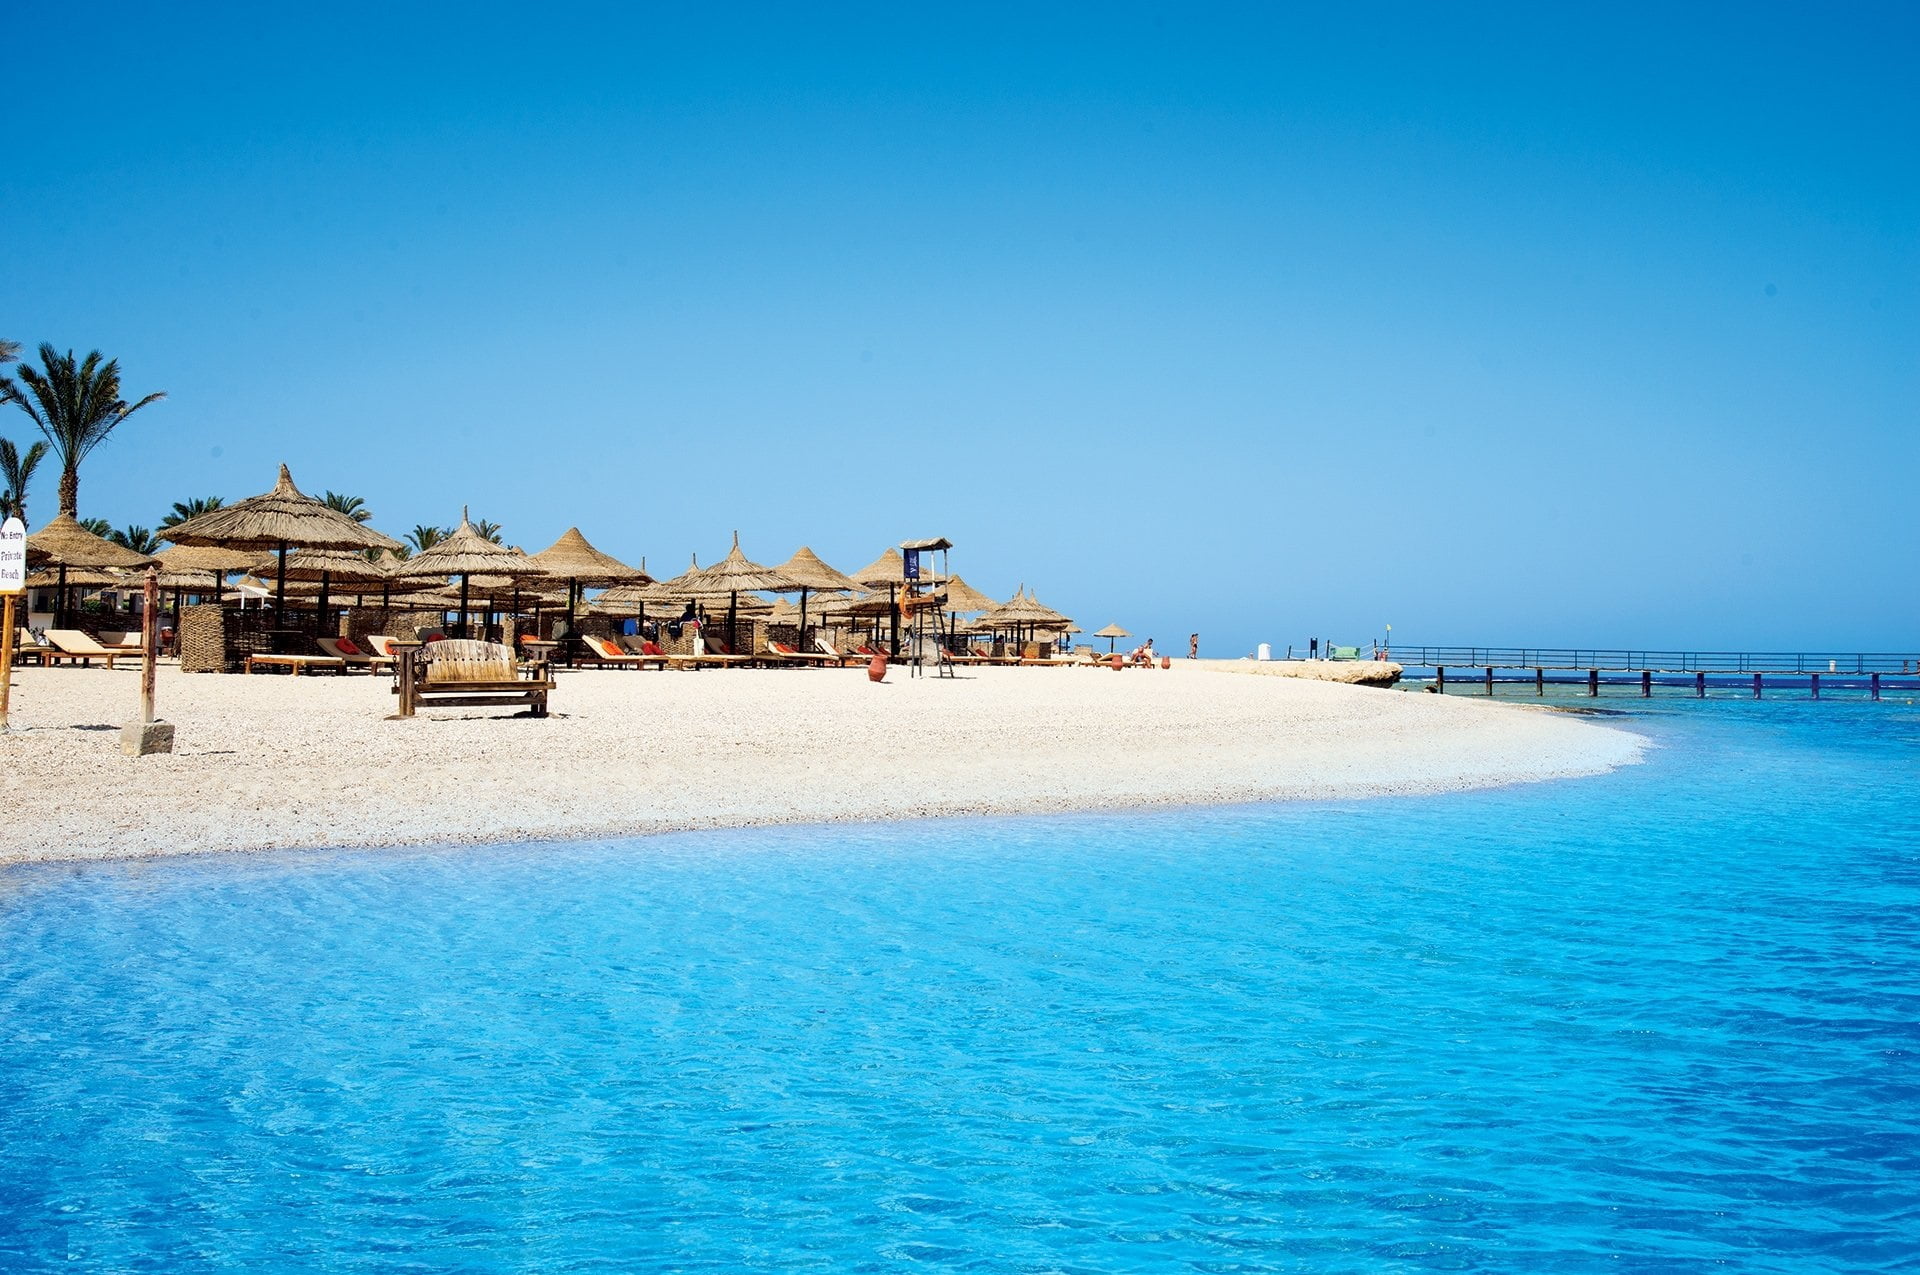 Комфортный пляжный отдых без визы в Египте